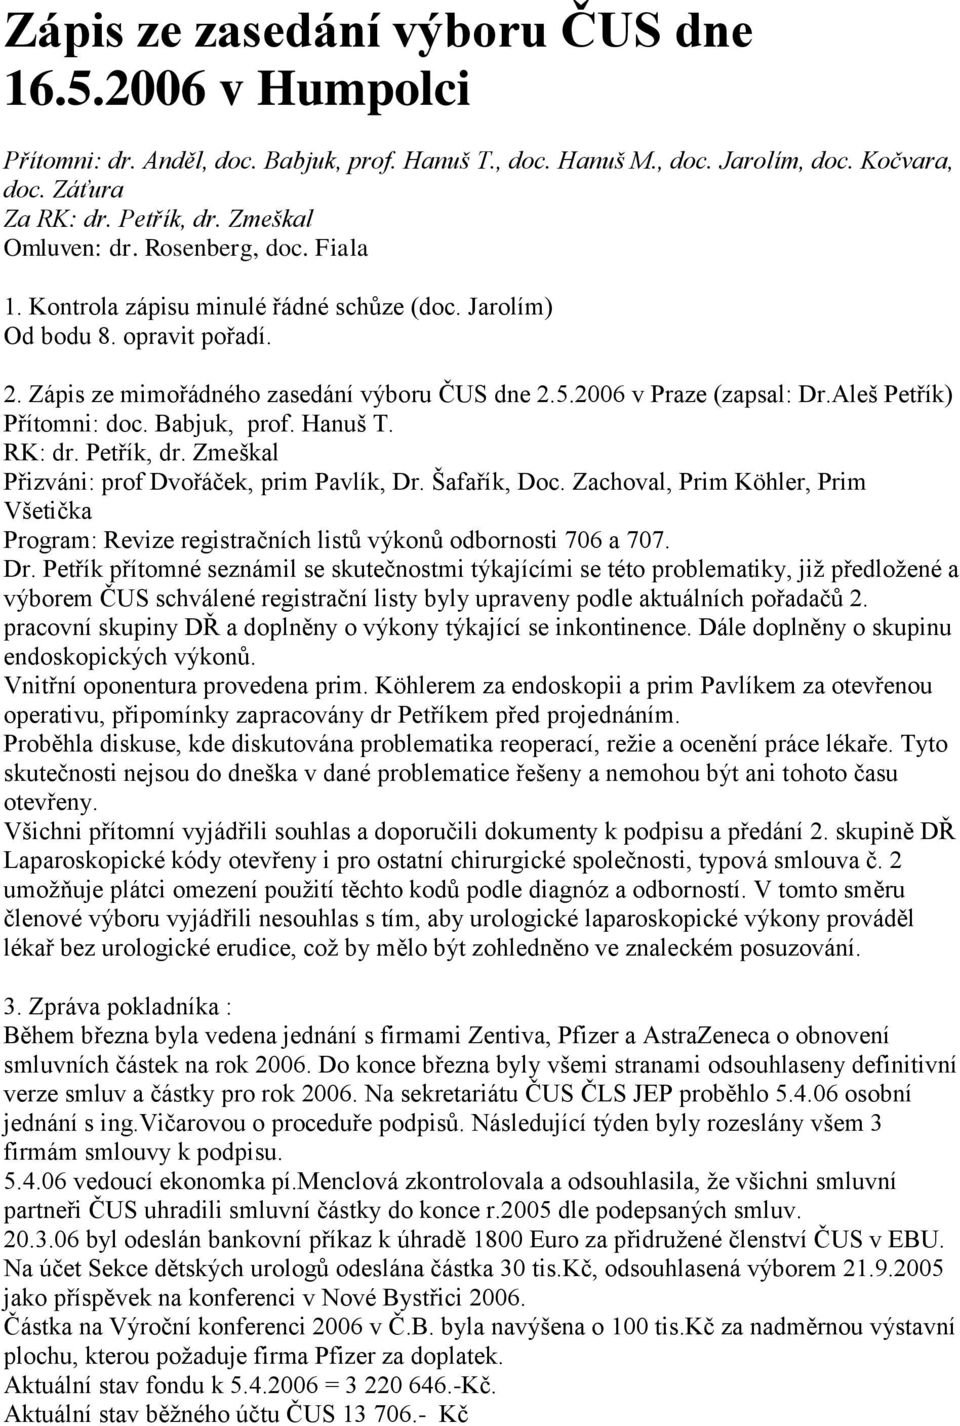 2006 v Praze (zapsal: Dr.Aleš Petřík) Přítomni: doc. Babjuk, prof. Hanuš T. RK: dr. Petřík, dr. Zmeškal Přizváni: prof Dvořáček, prim Pavlík, Dr. Šafařík, Doc.